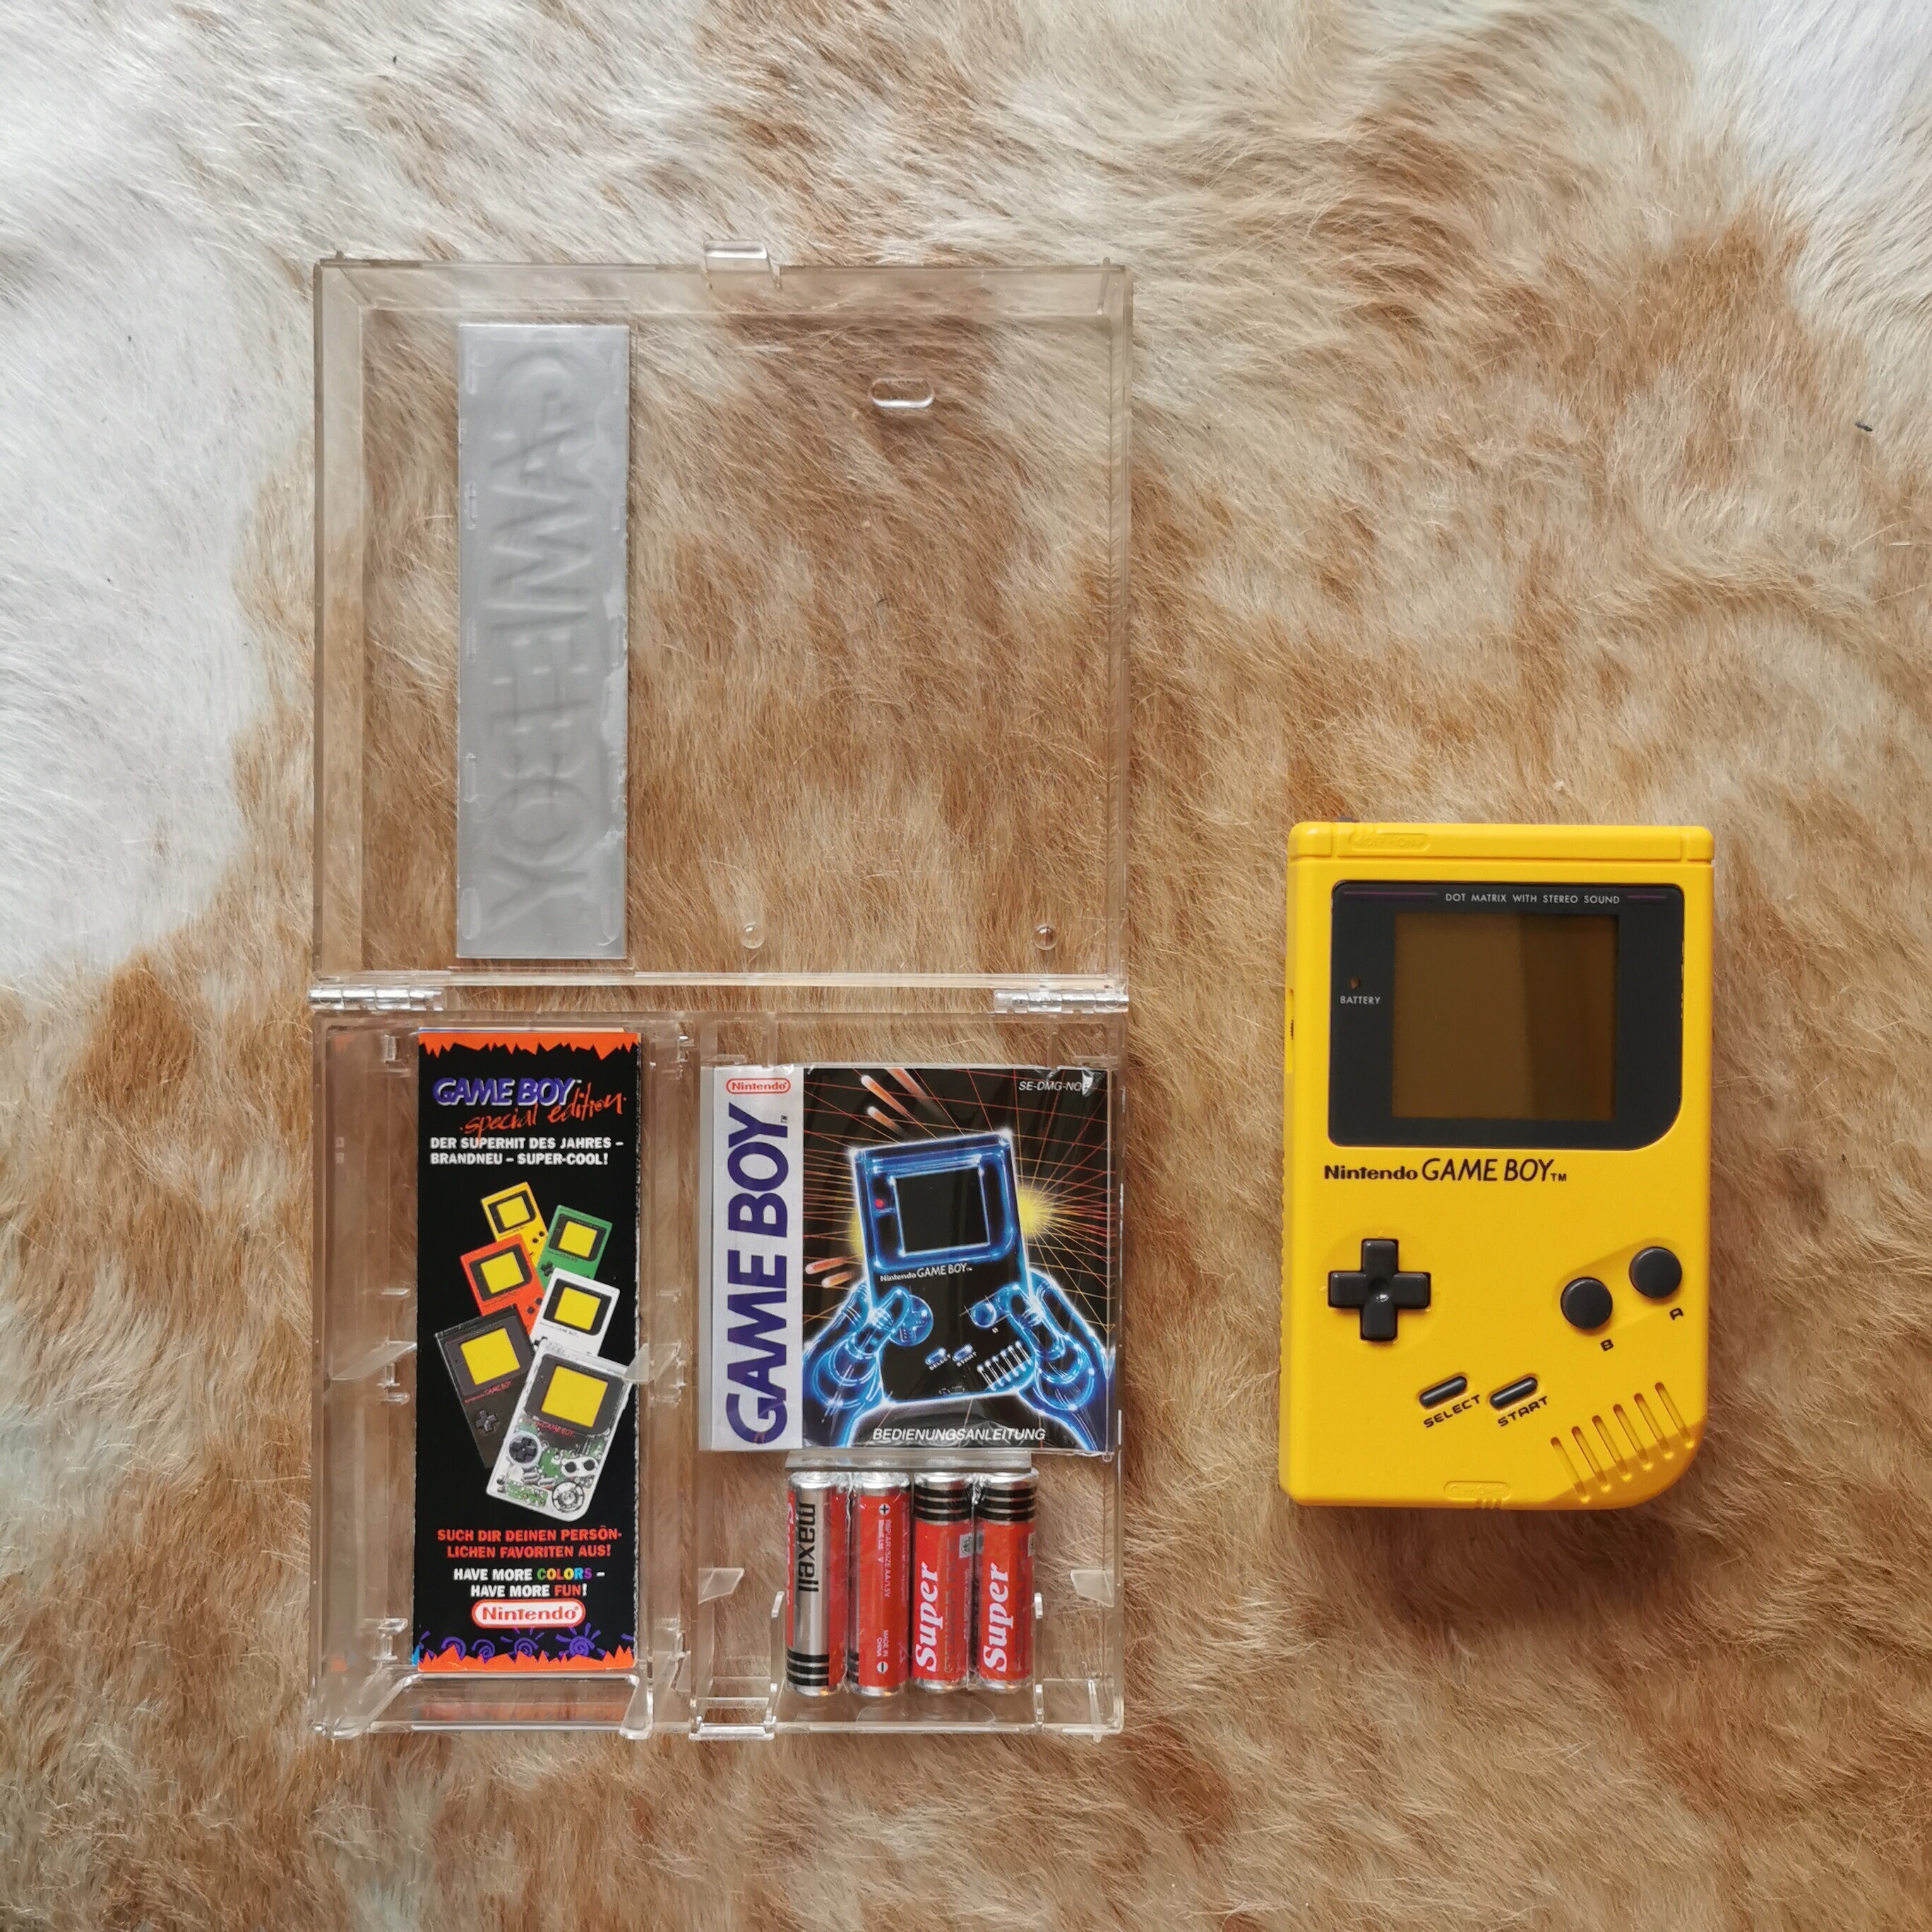  Nintendo Game Boy Nintendo Game Boy Crystal Case Yellow Console [NOE]